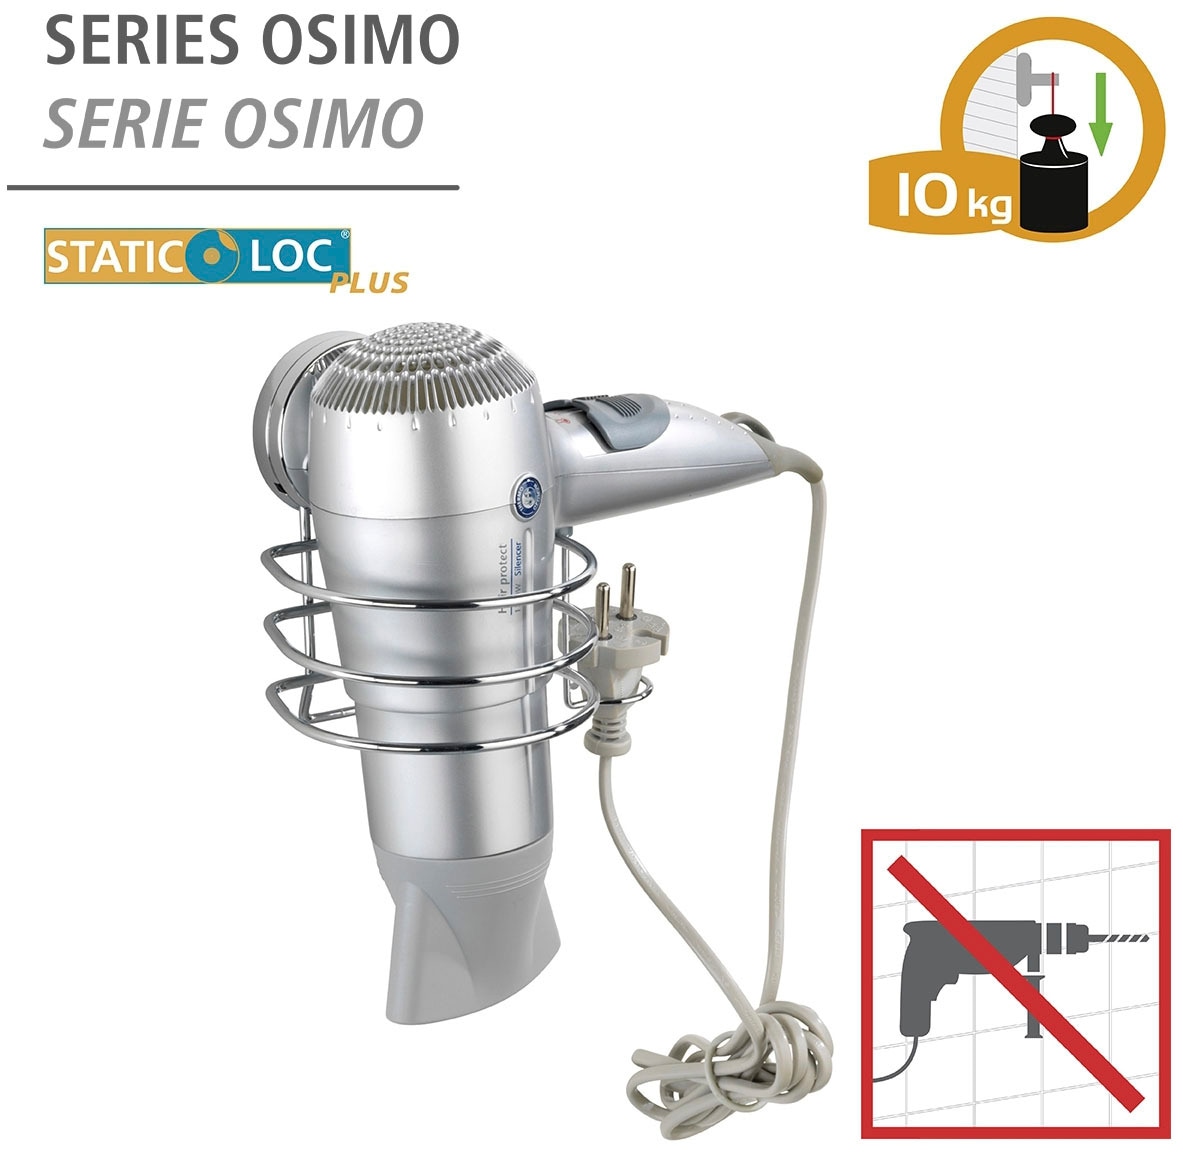 WENKO Haartrocknerhalter »Static-Loc® Plus Osimo«, Befestigen ohne Bohren